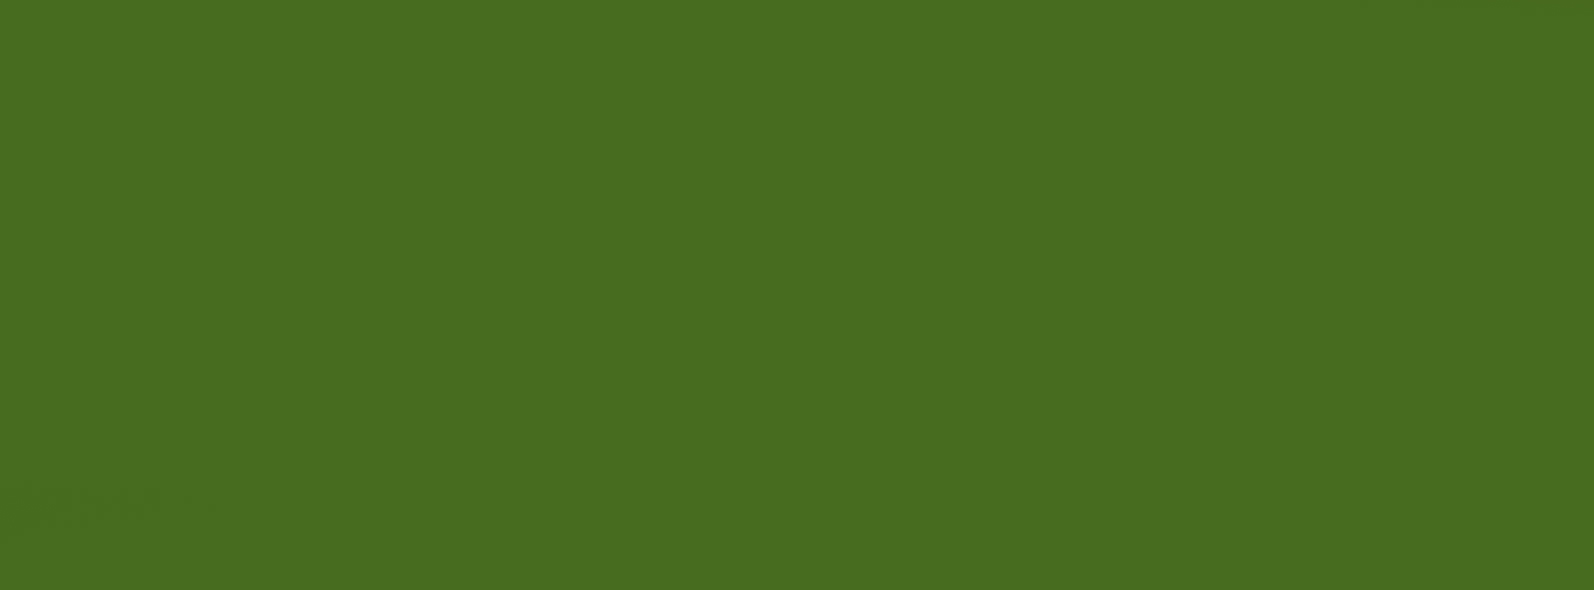 6178 - John Deere Yeşil